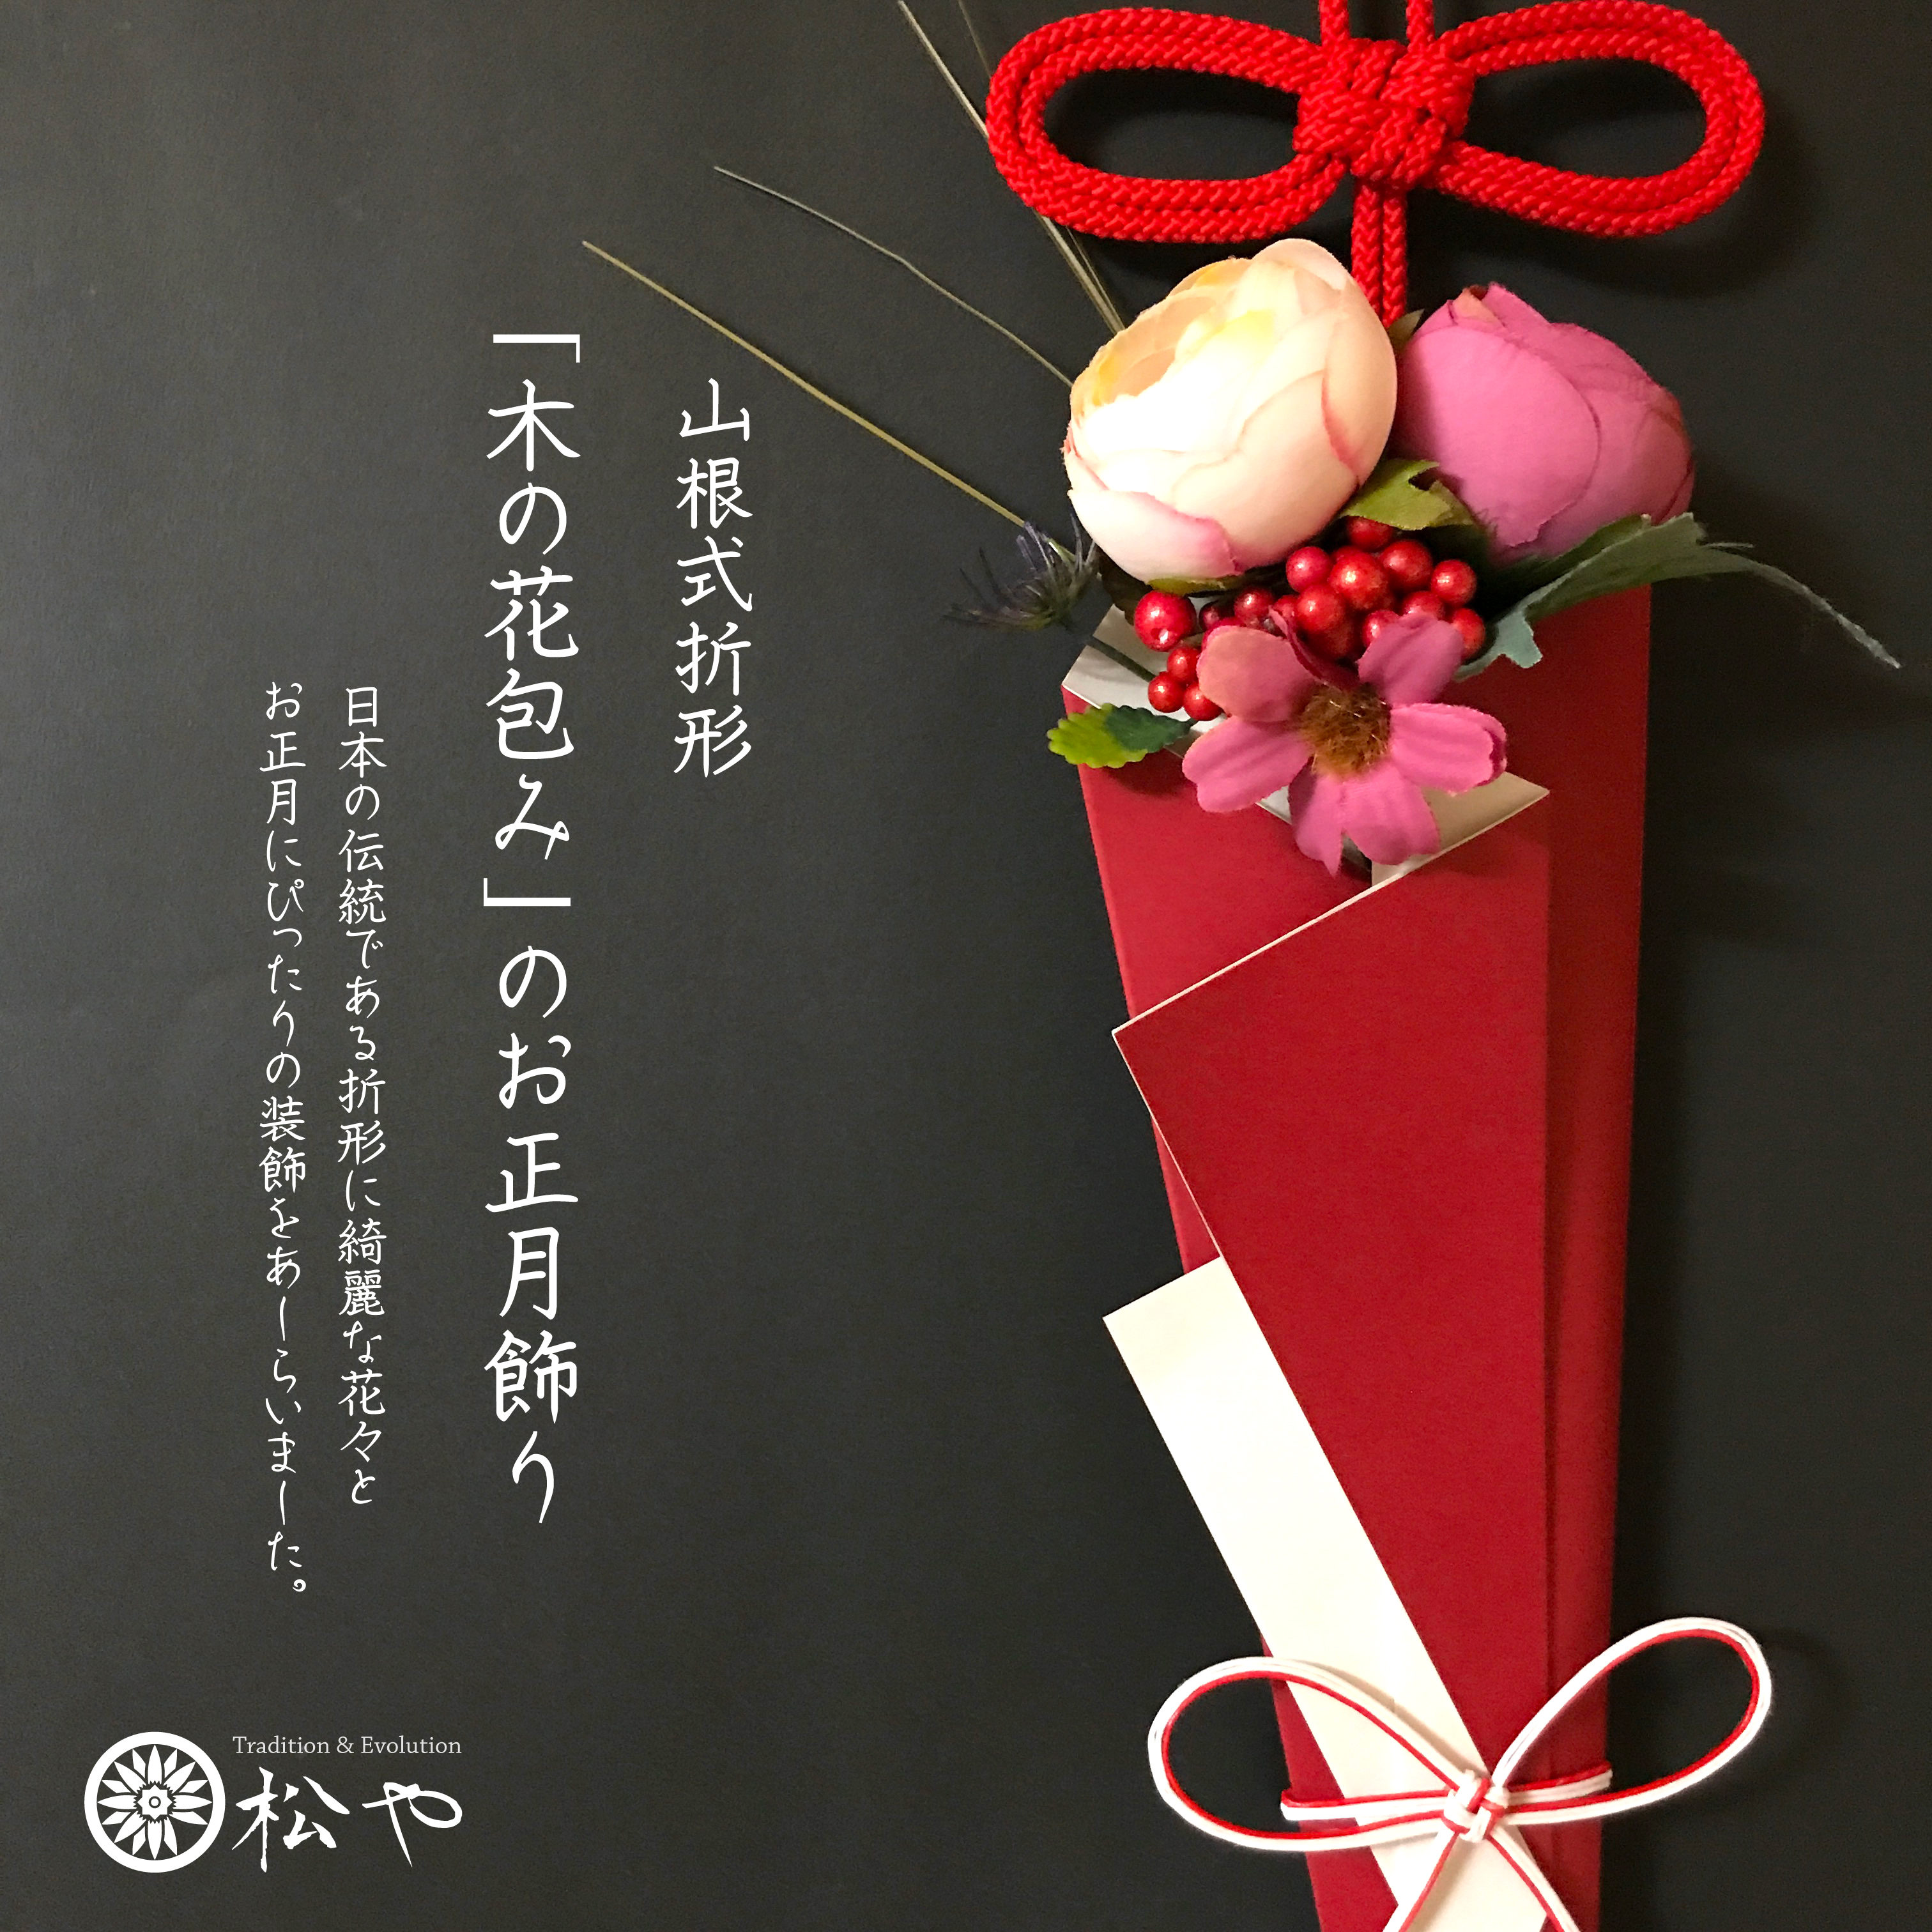 木の花包みのお正月飾り Iichi ハンドメイド クラフト作品 手仕事品の通販